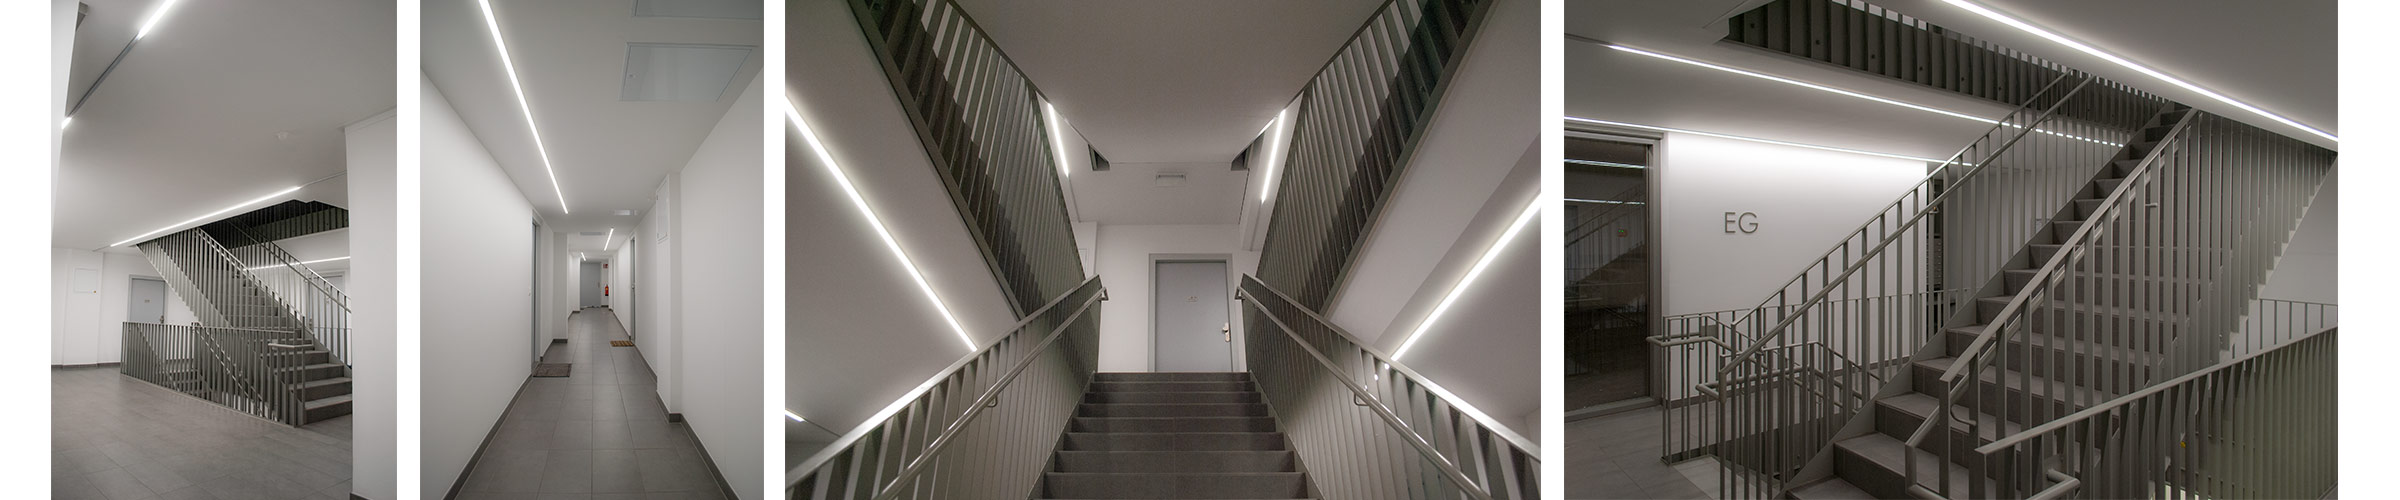 Wohnhausanlage mit SML LED Produkten